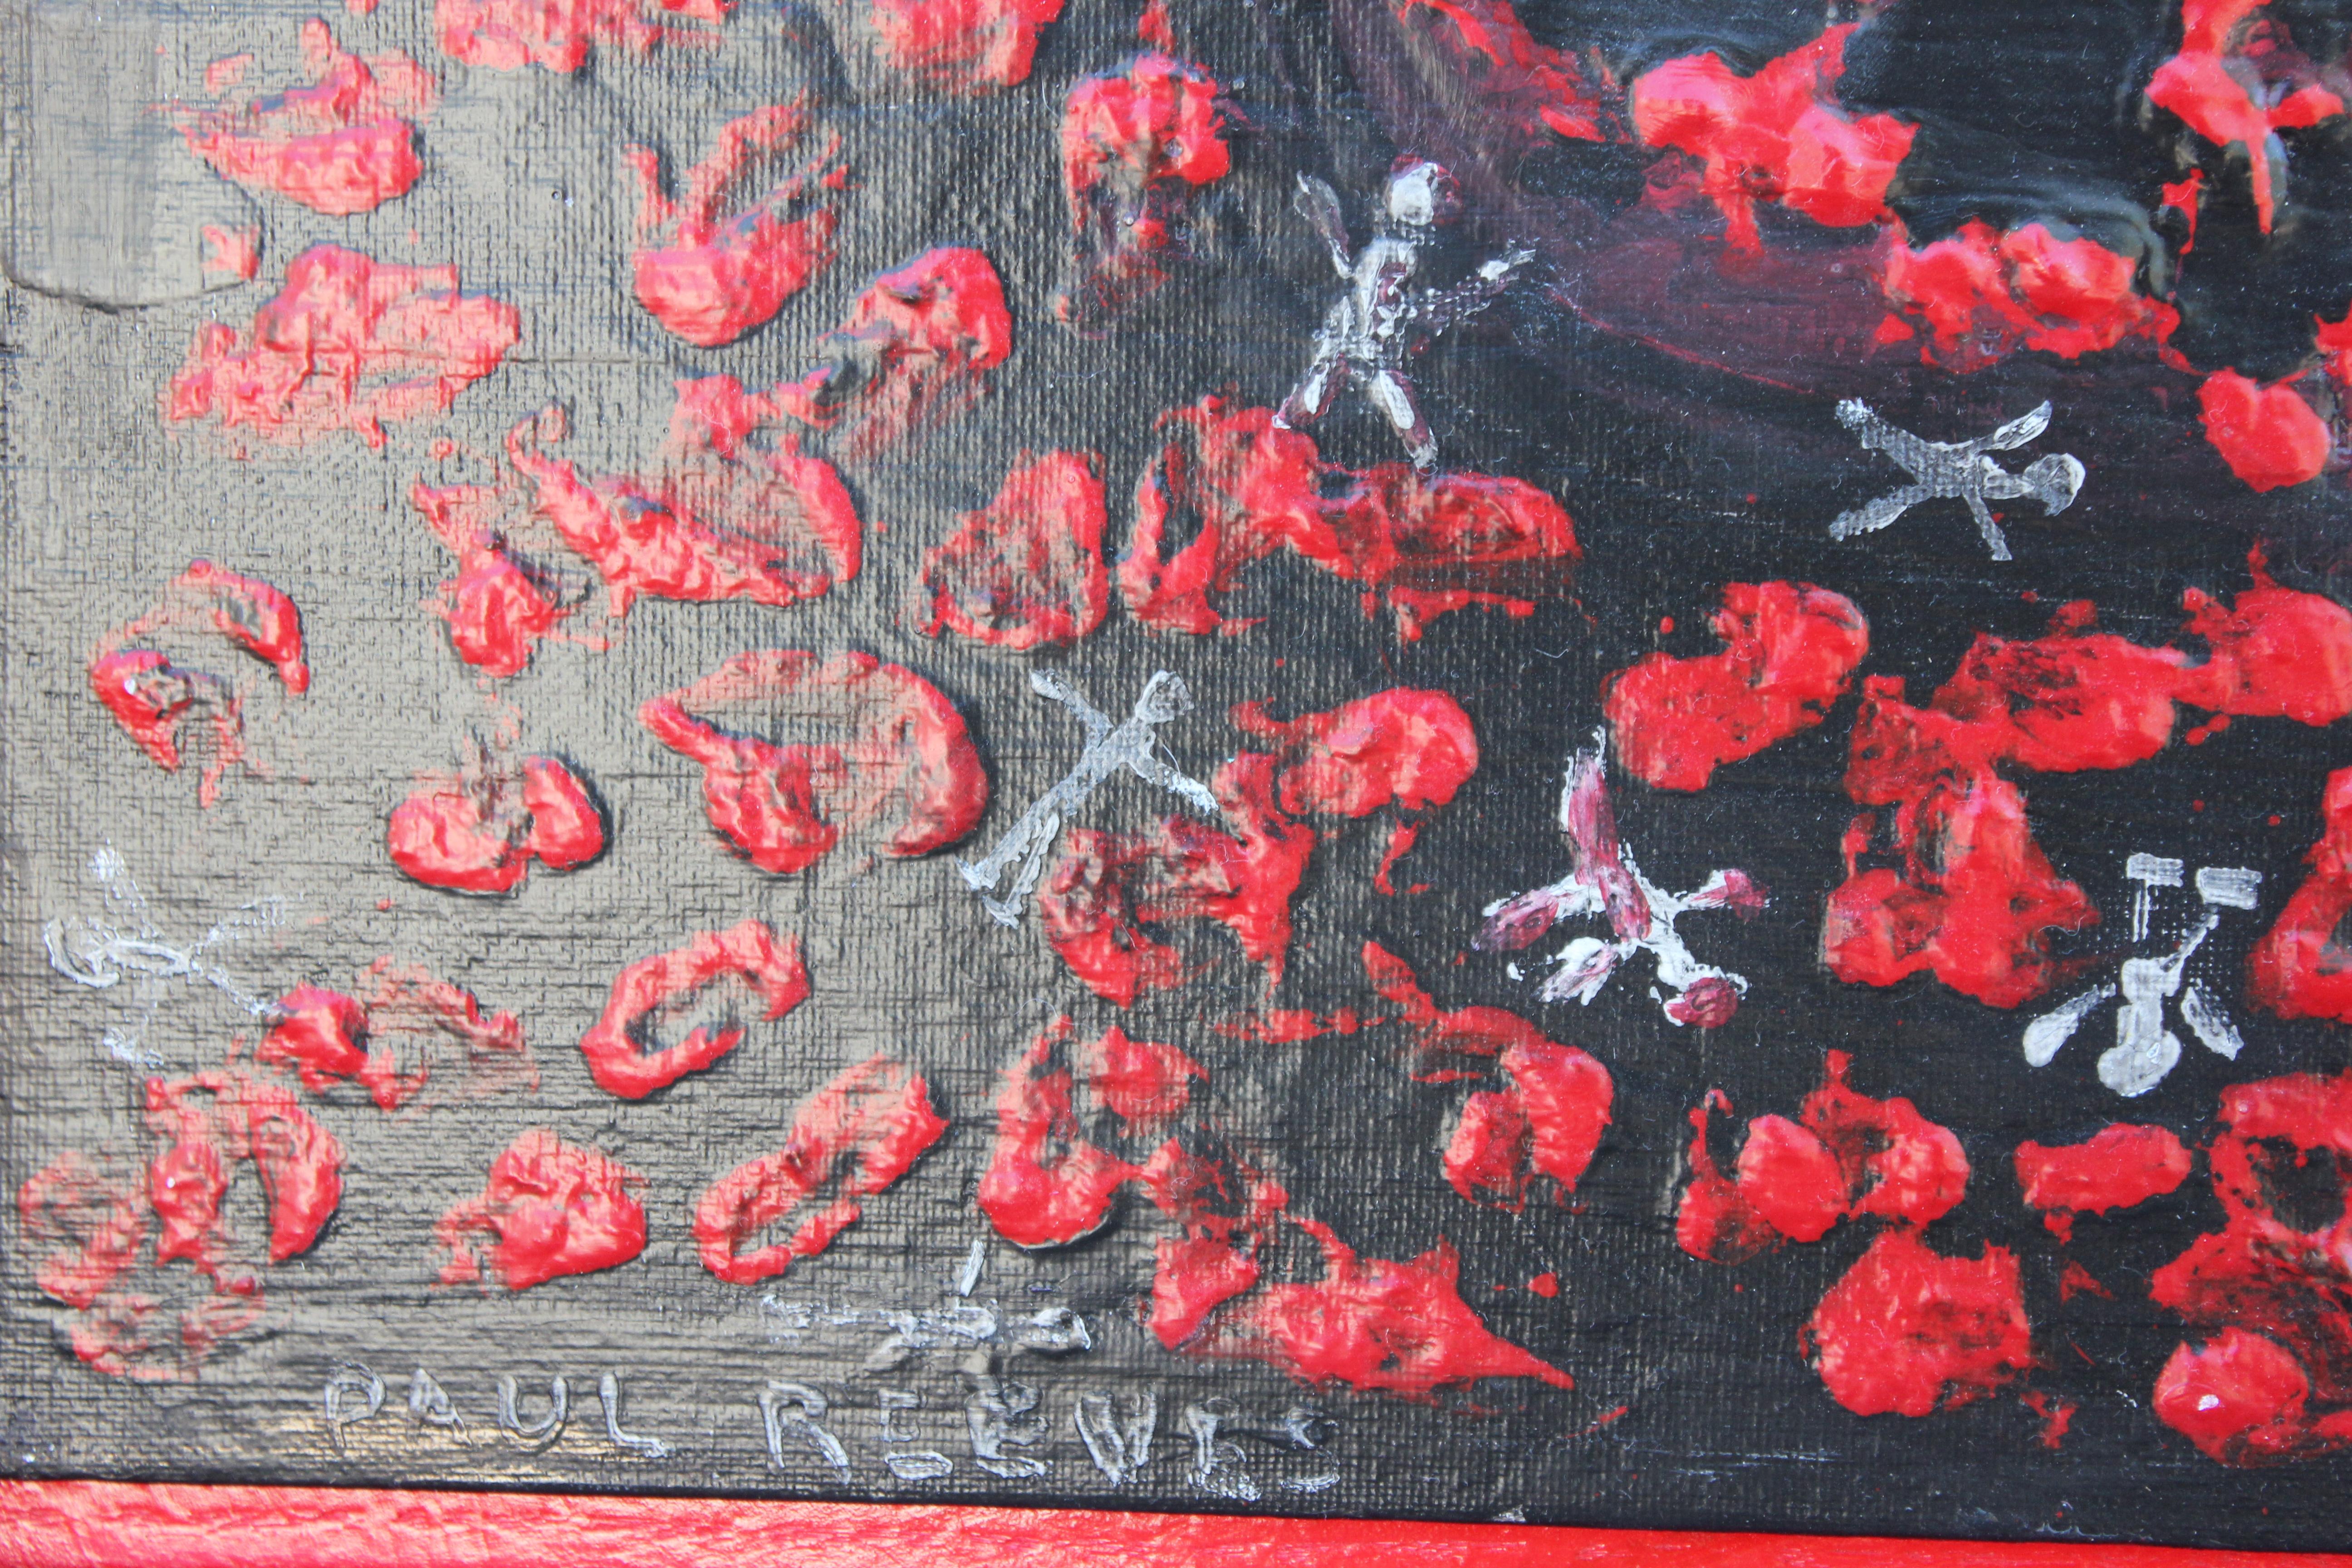 „ „Pollution““ Rotes und schwarzes abstraktes Gemälde (Grau), Figurative Painting, von Paul Reeves